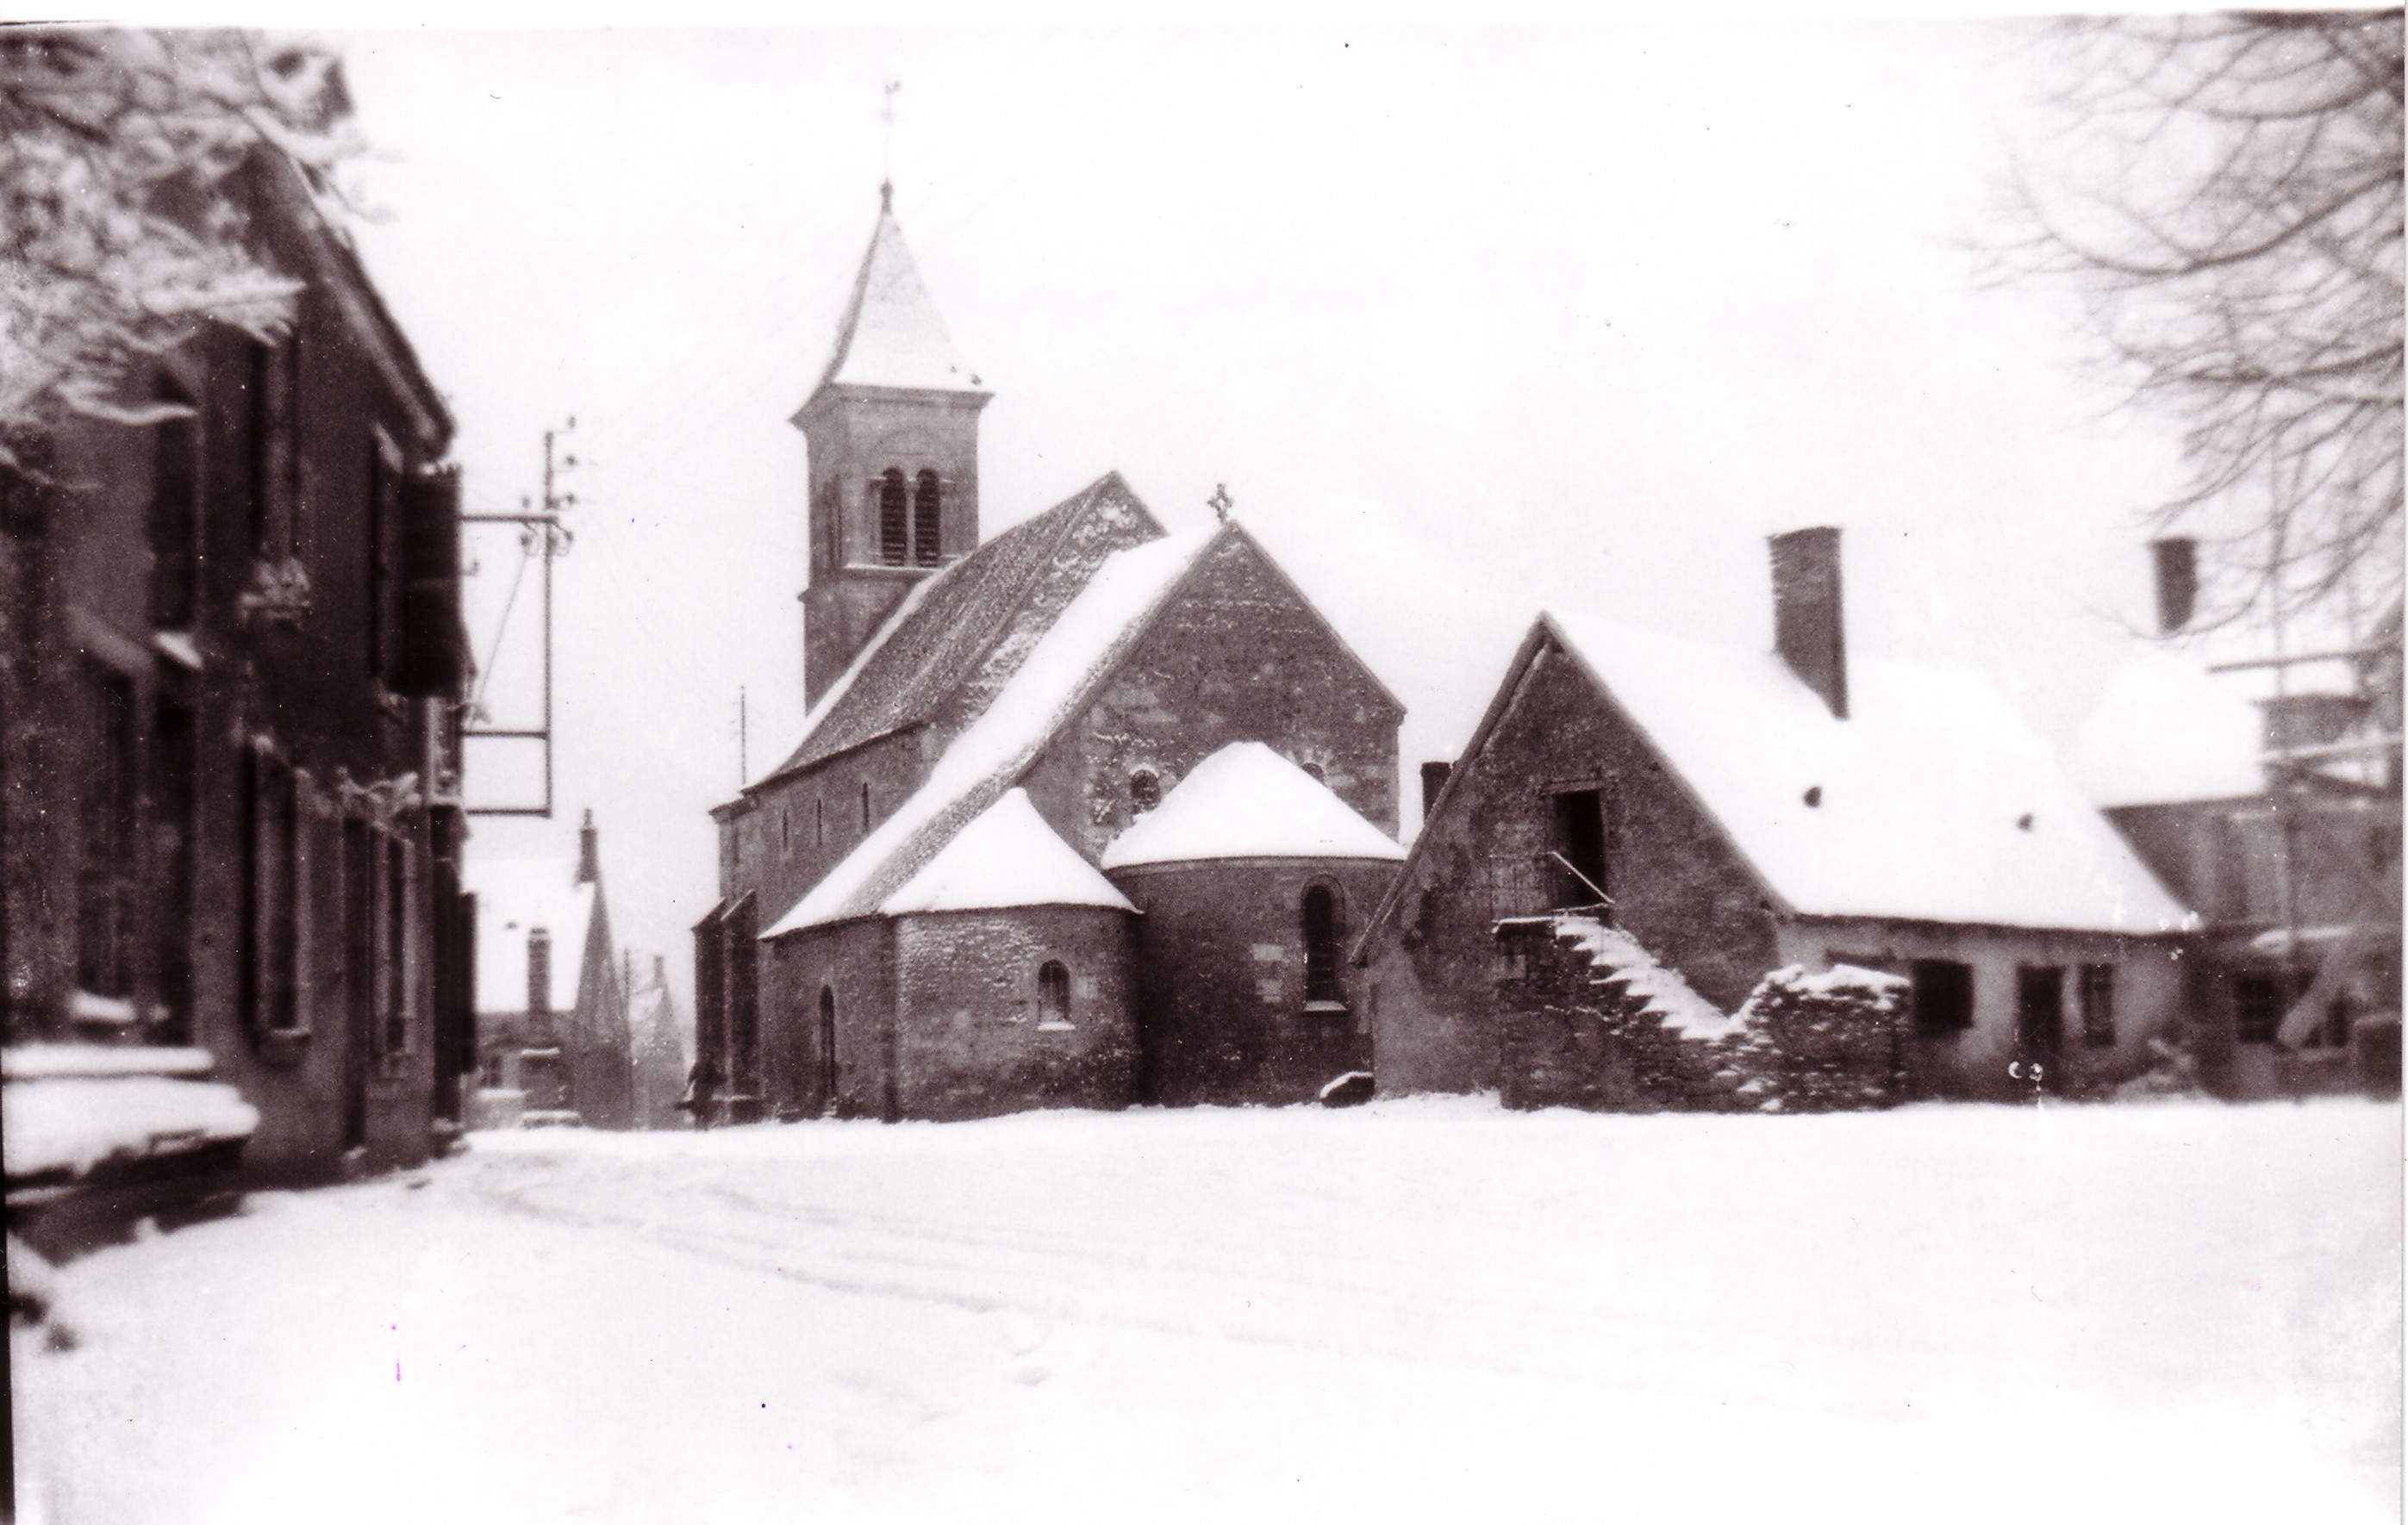 église neige 1952 (mimi Appert)